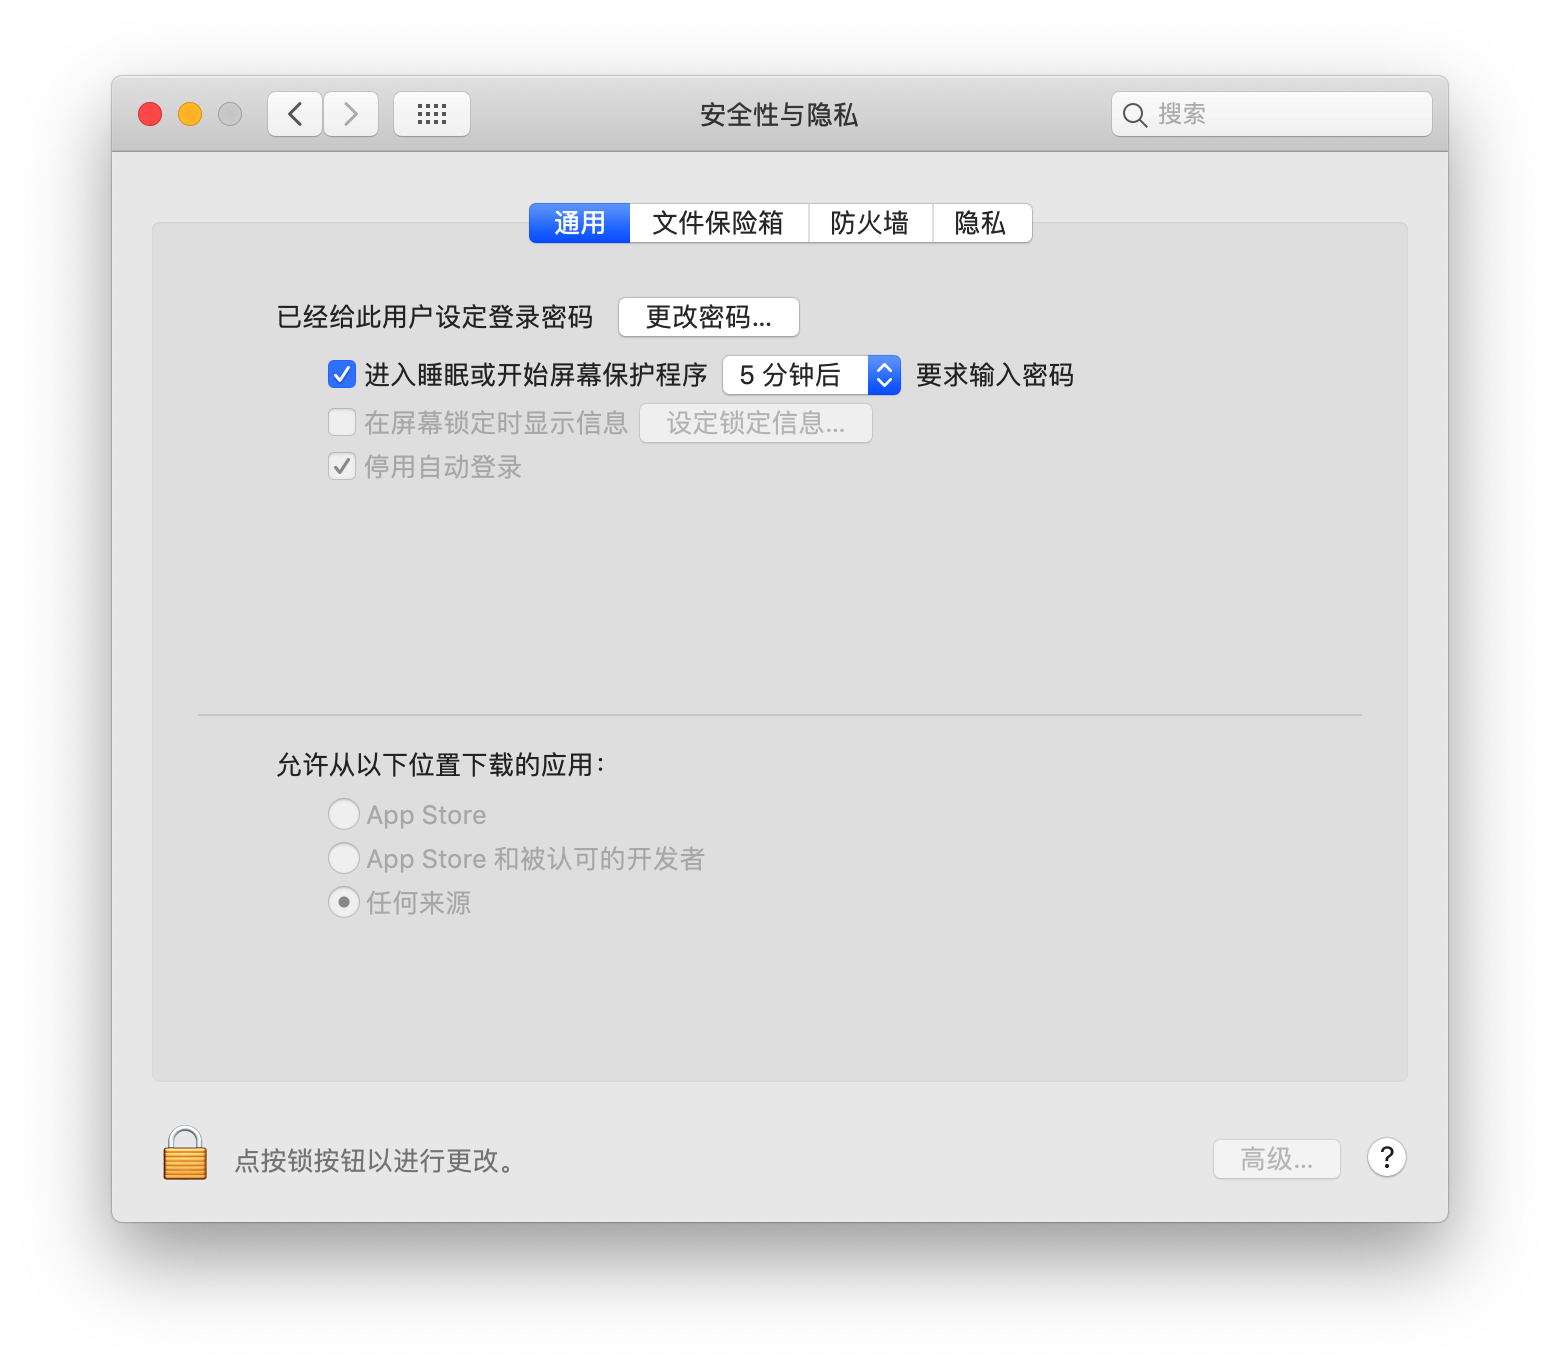 MacOS提示“打不开xxx,因为Apple无法检查其是否包含恶意软件...”